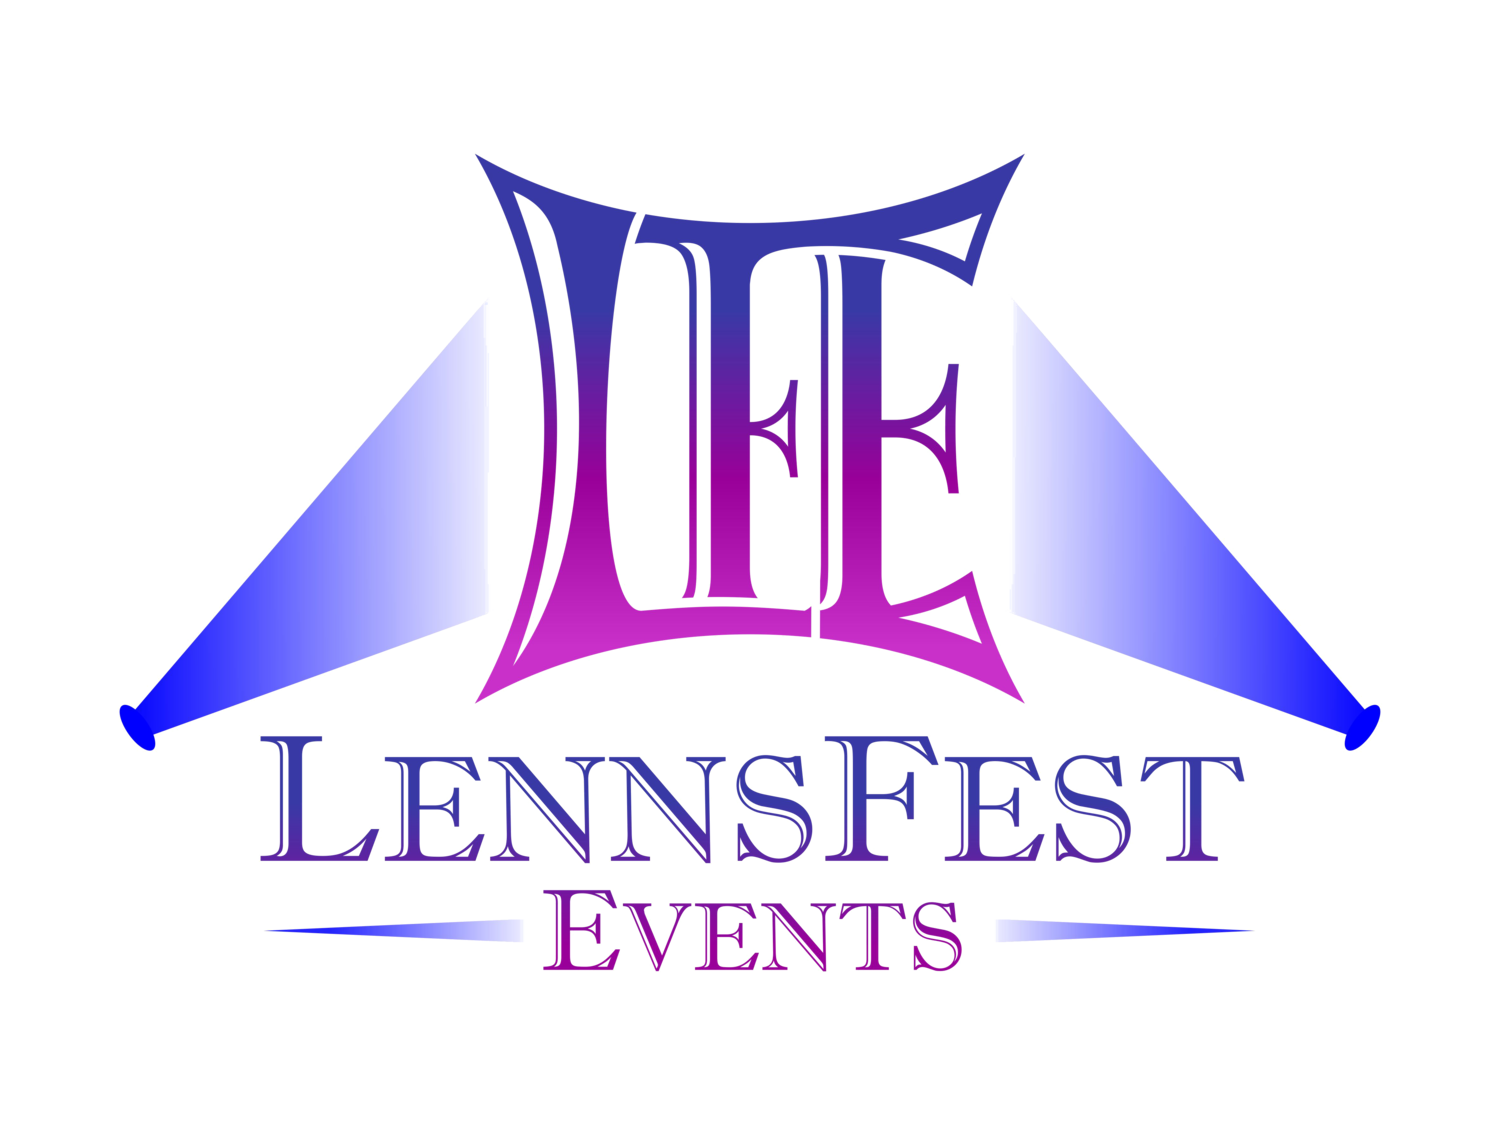 LennsFest Events